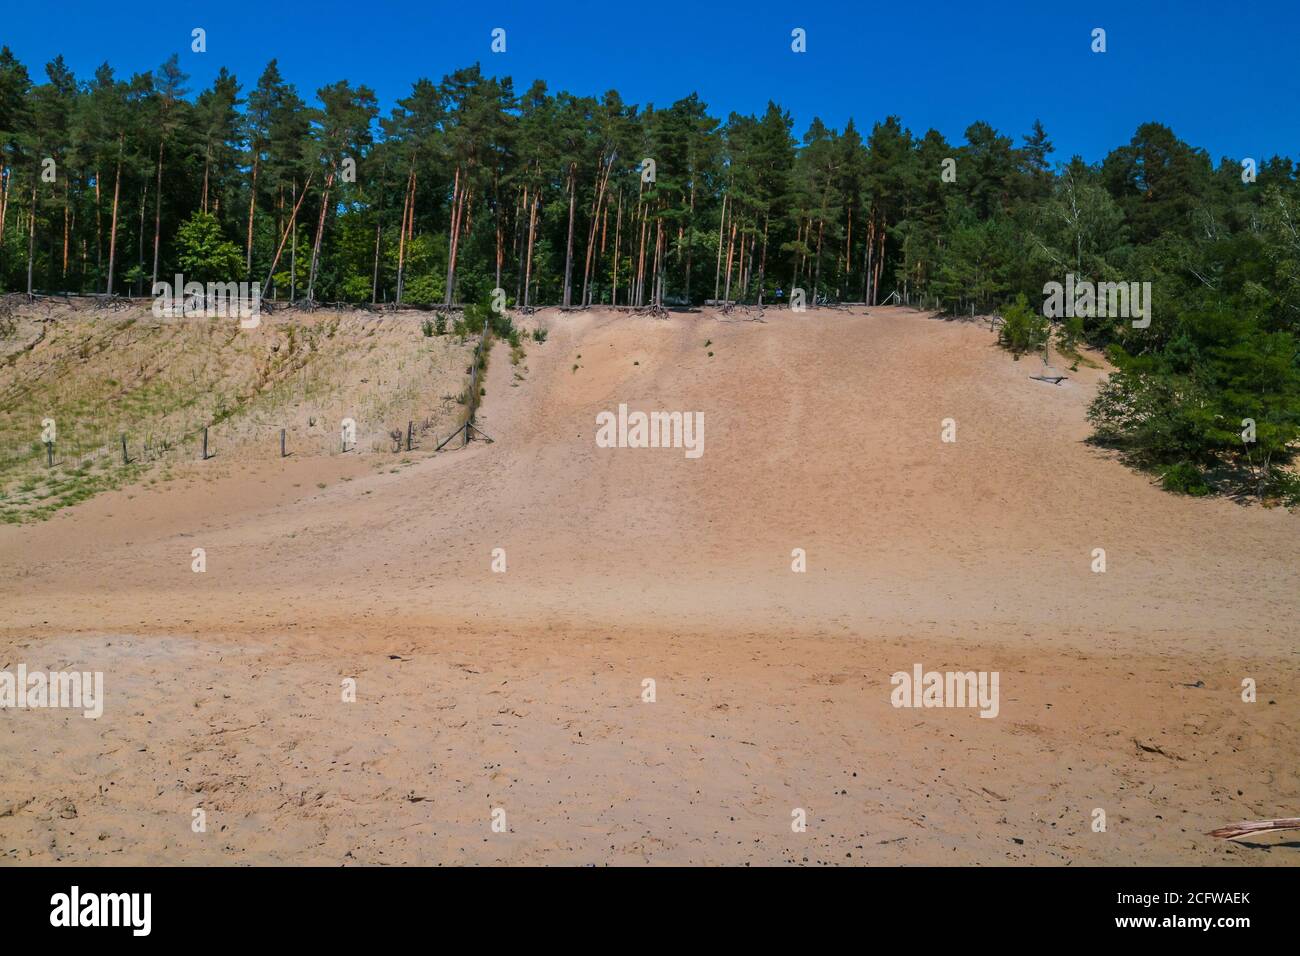 Dunes de sable dans la forêt, une réserve naturelle et un habitat faunique urbain. 'Im Jagen' sandfoits à la forêt de Grunewald, Berlin, Allemagne. Banque D'Images